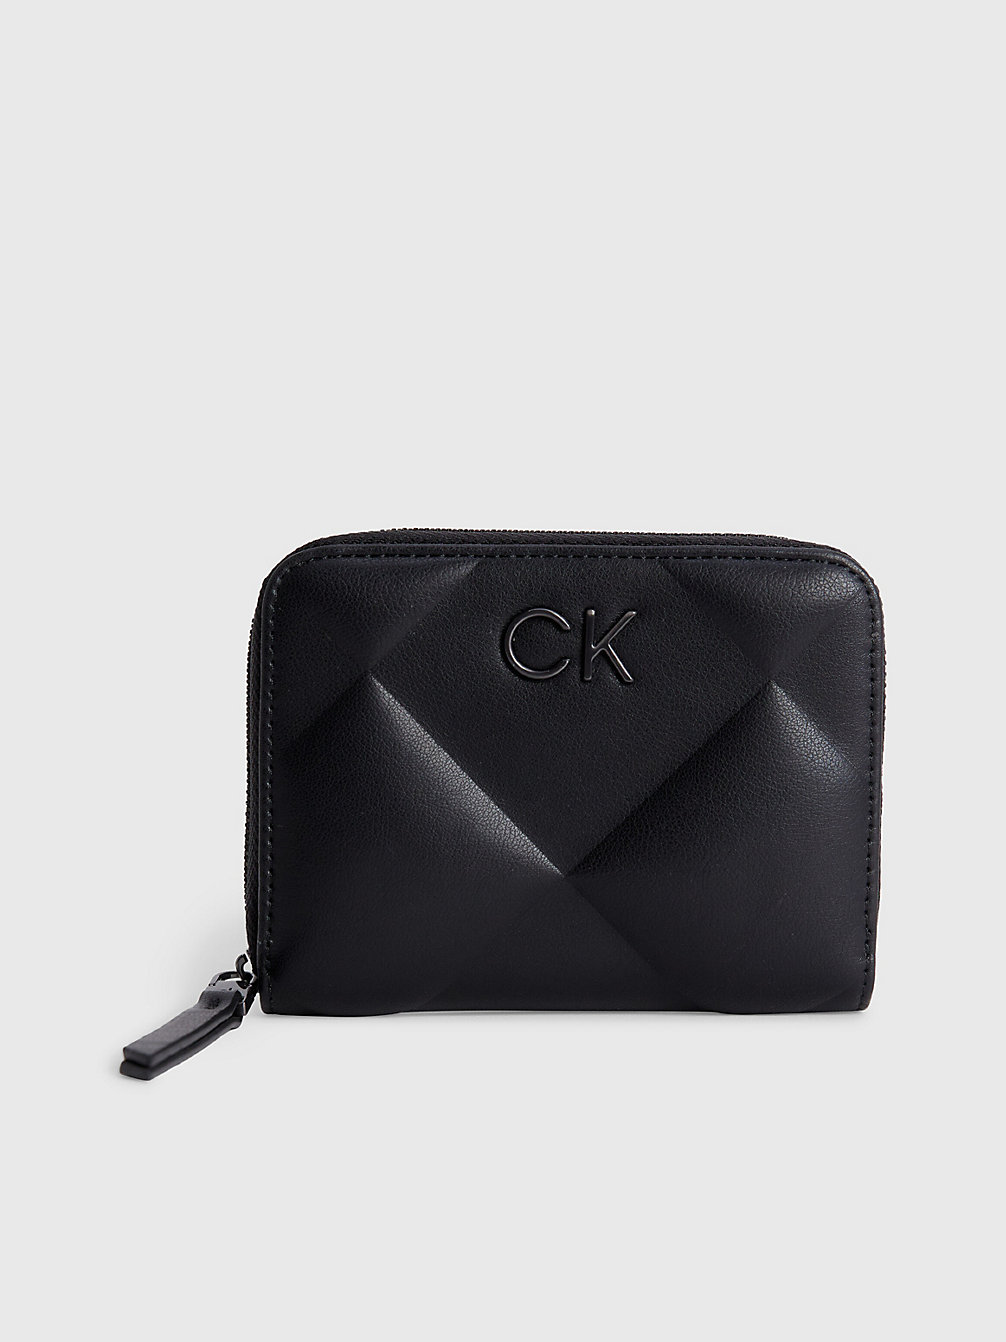 CK BLACK Gestepptes Rfid-Portemonnaie Mit Rundum-Reißverschluss undefined Damen Calvin Klein